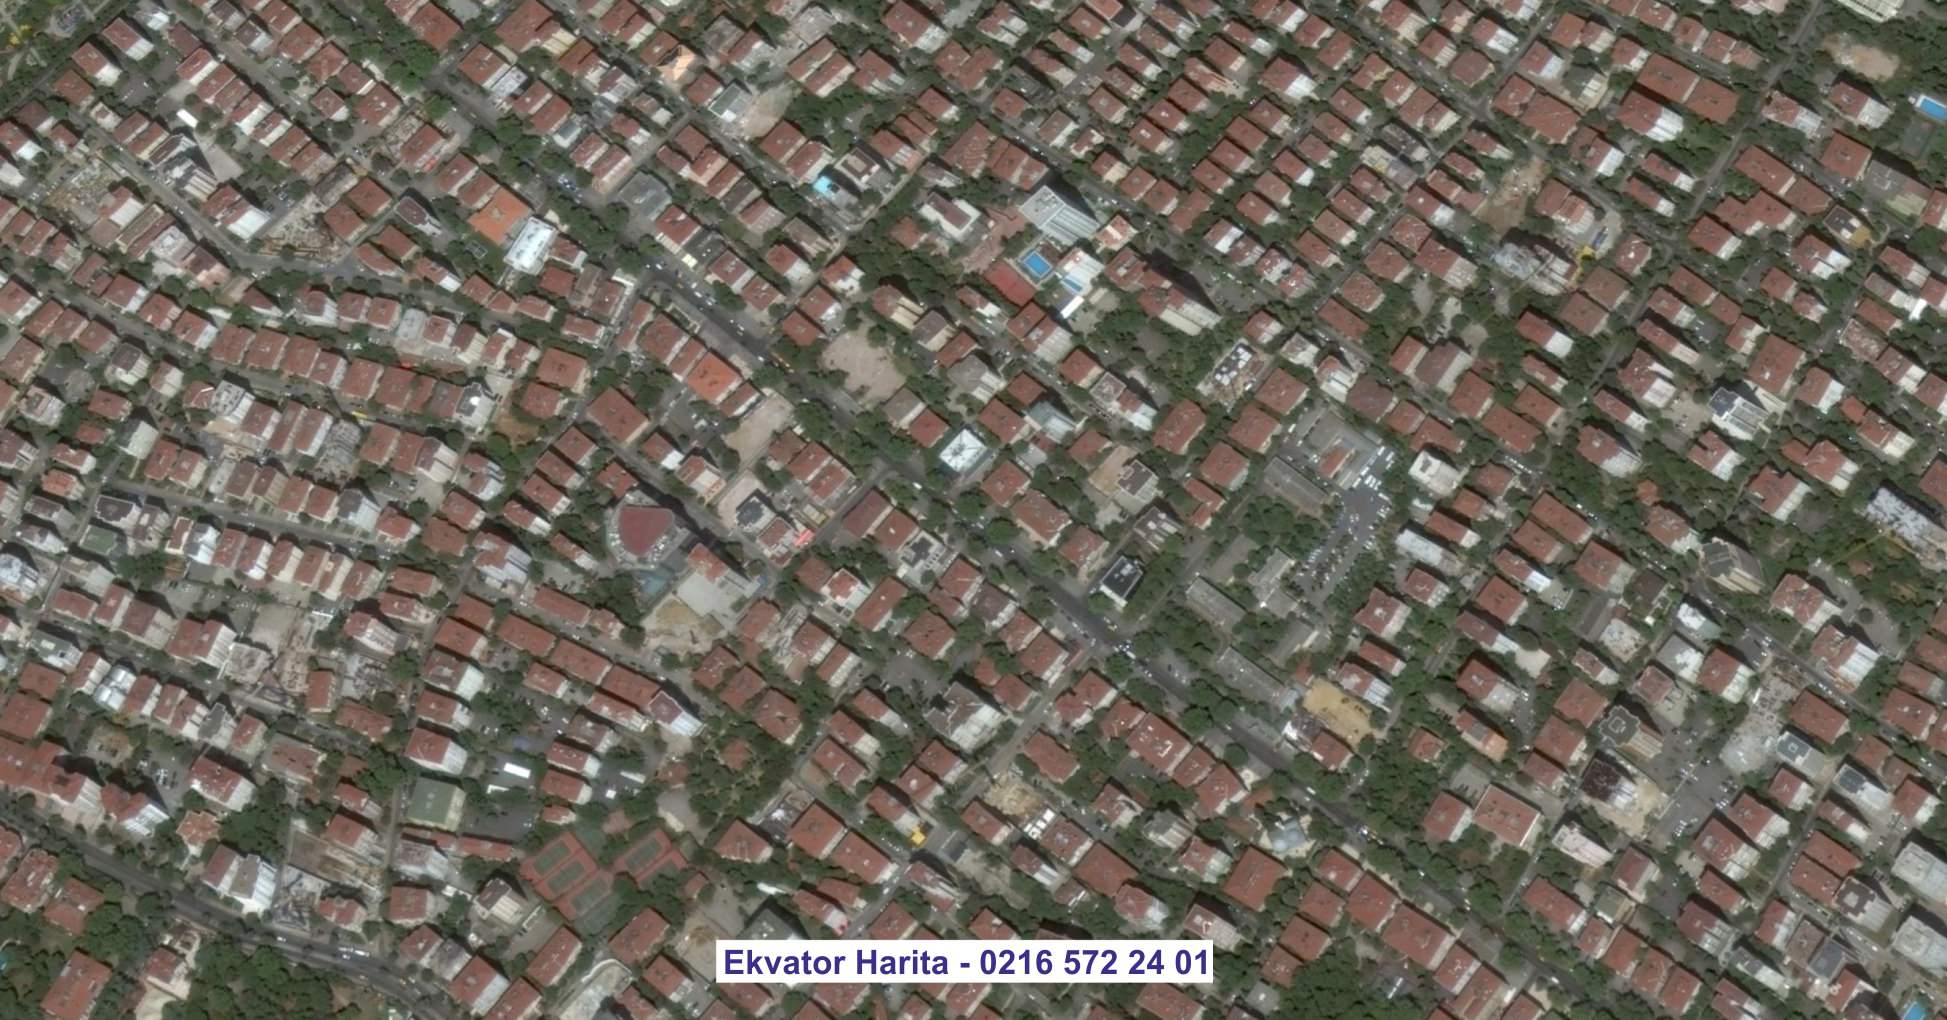 Erzurum Uydu Görüntüsü Örnek Fotoğrafı